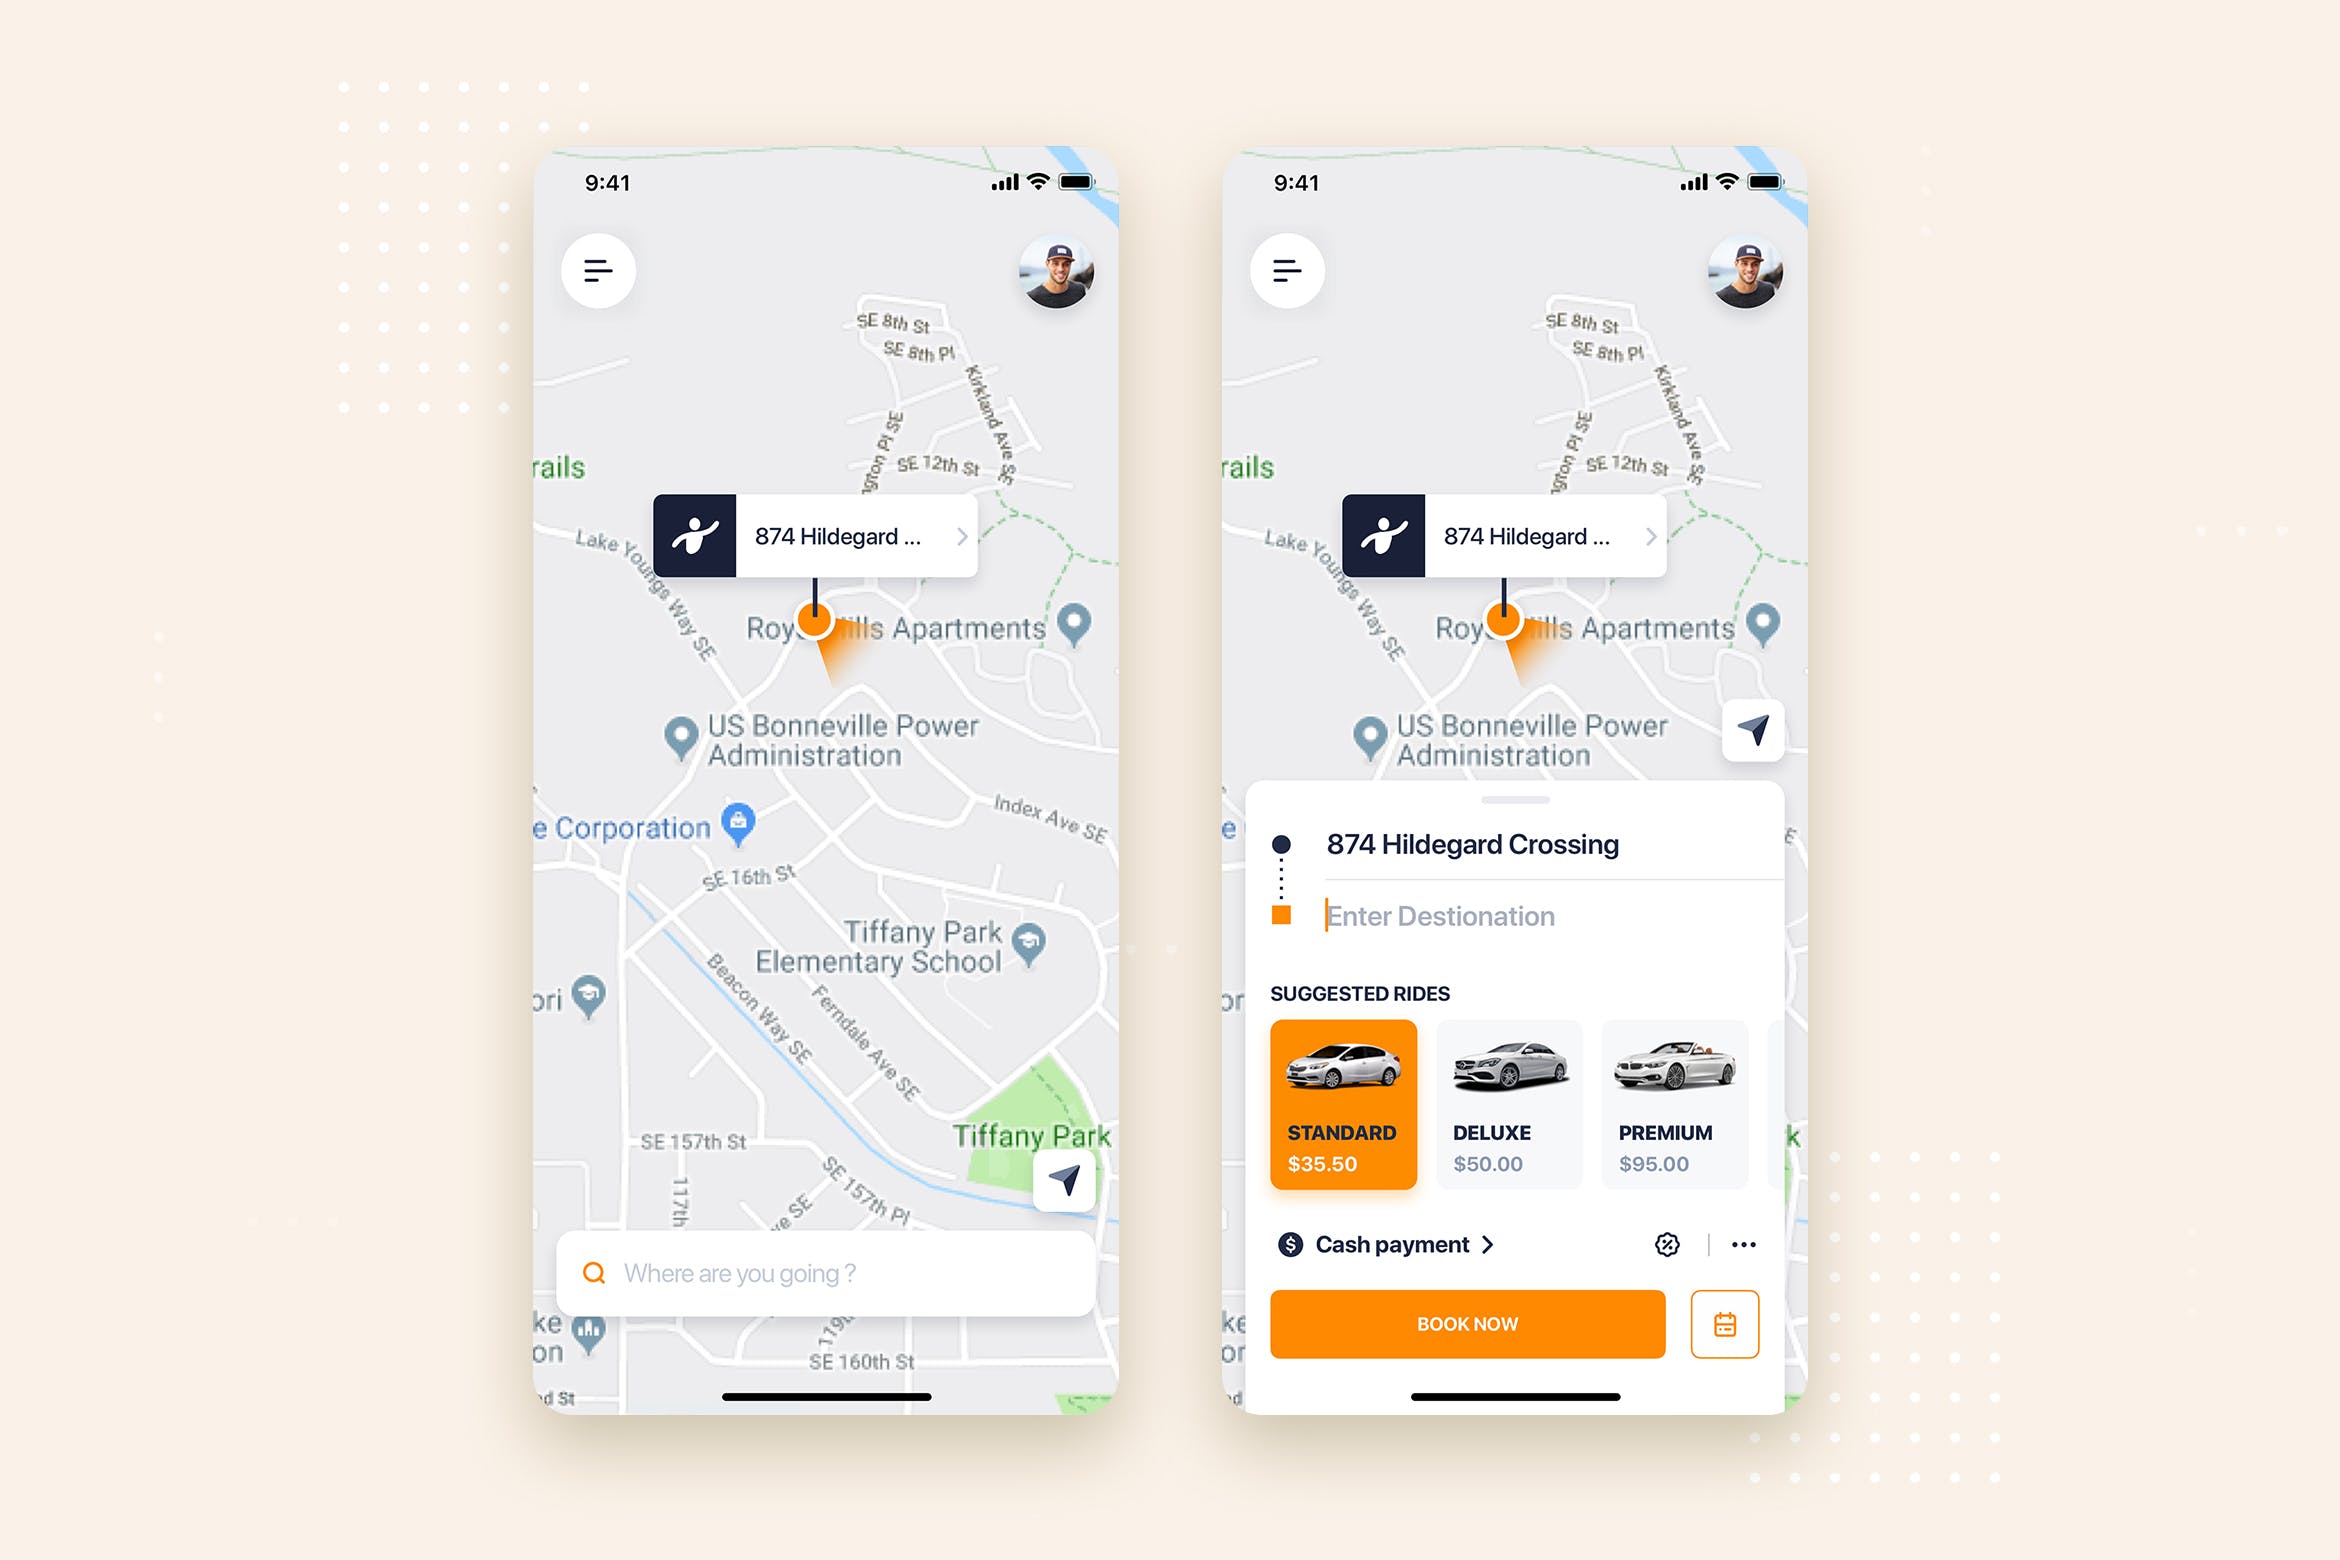 网约车APP应用预约界面UI设计第一素材精选模板 Taxi Booking Mobile App UI Kit Template插图